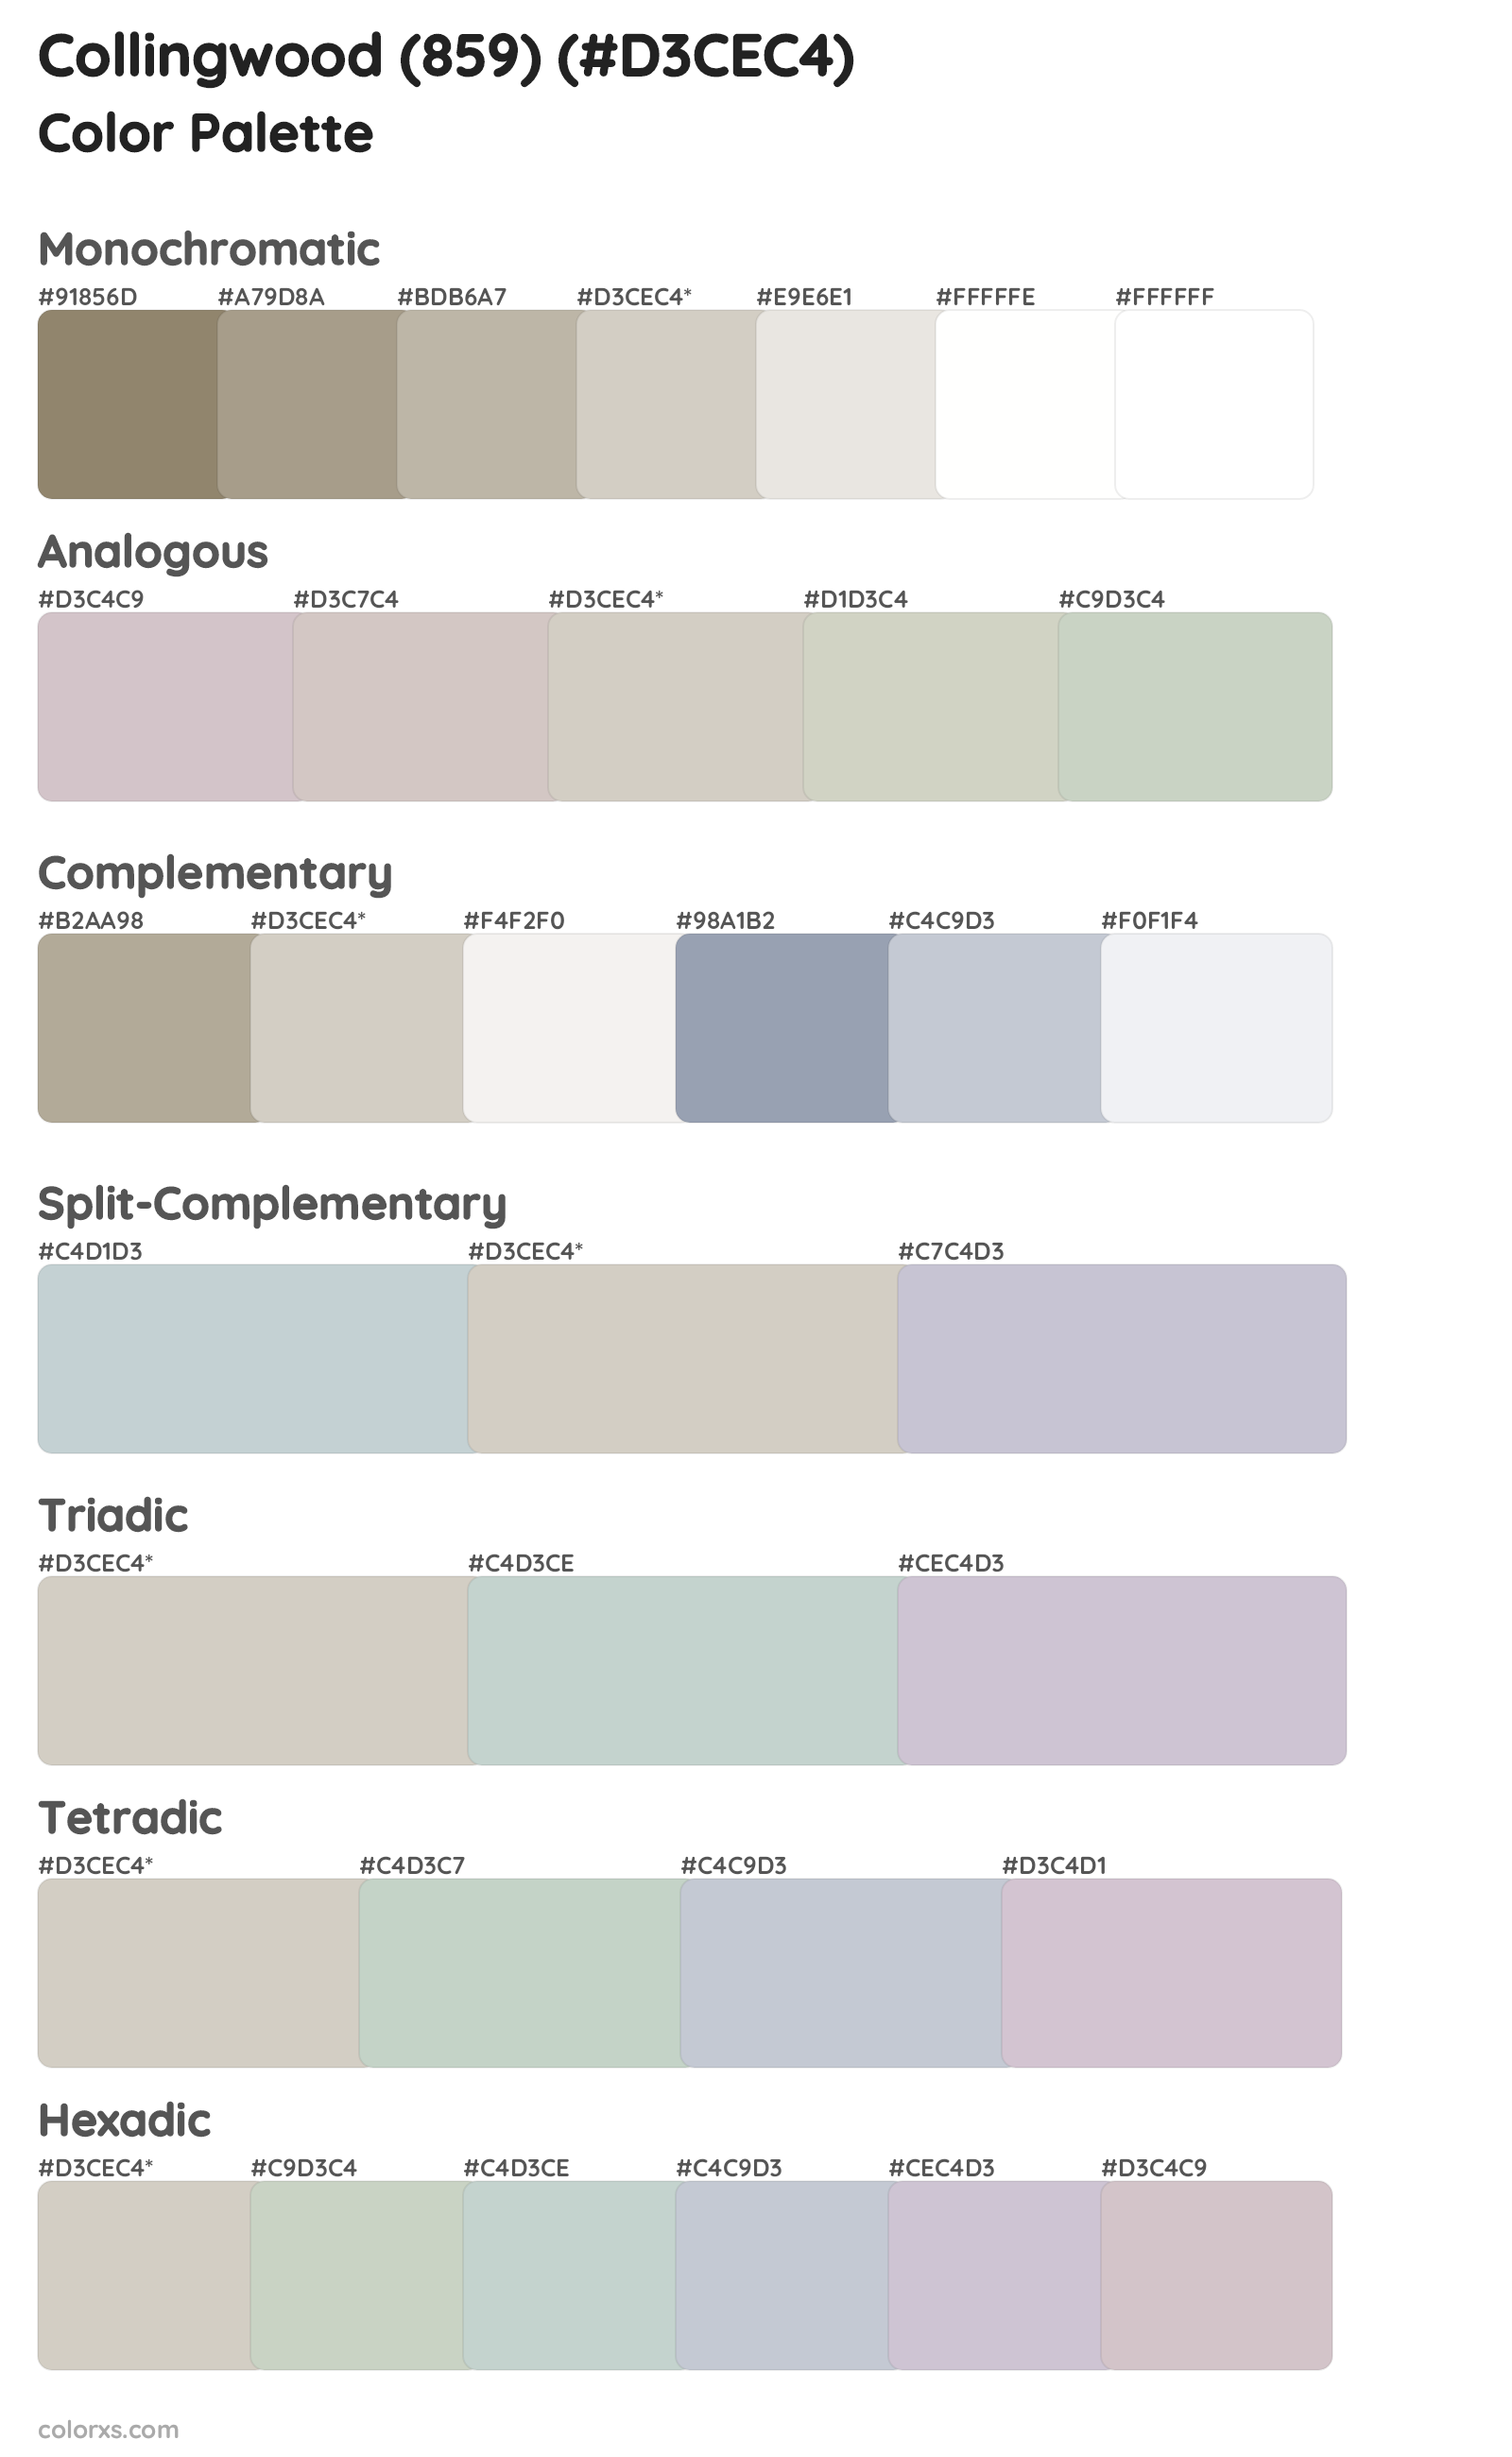 Collingwood (859) Color Scheme Palettes